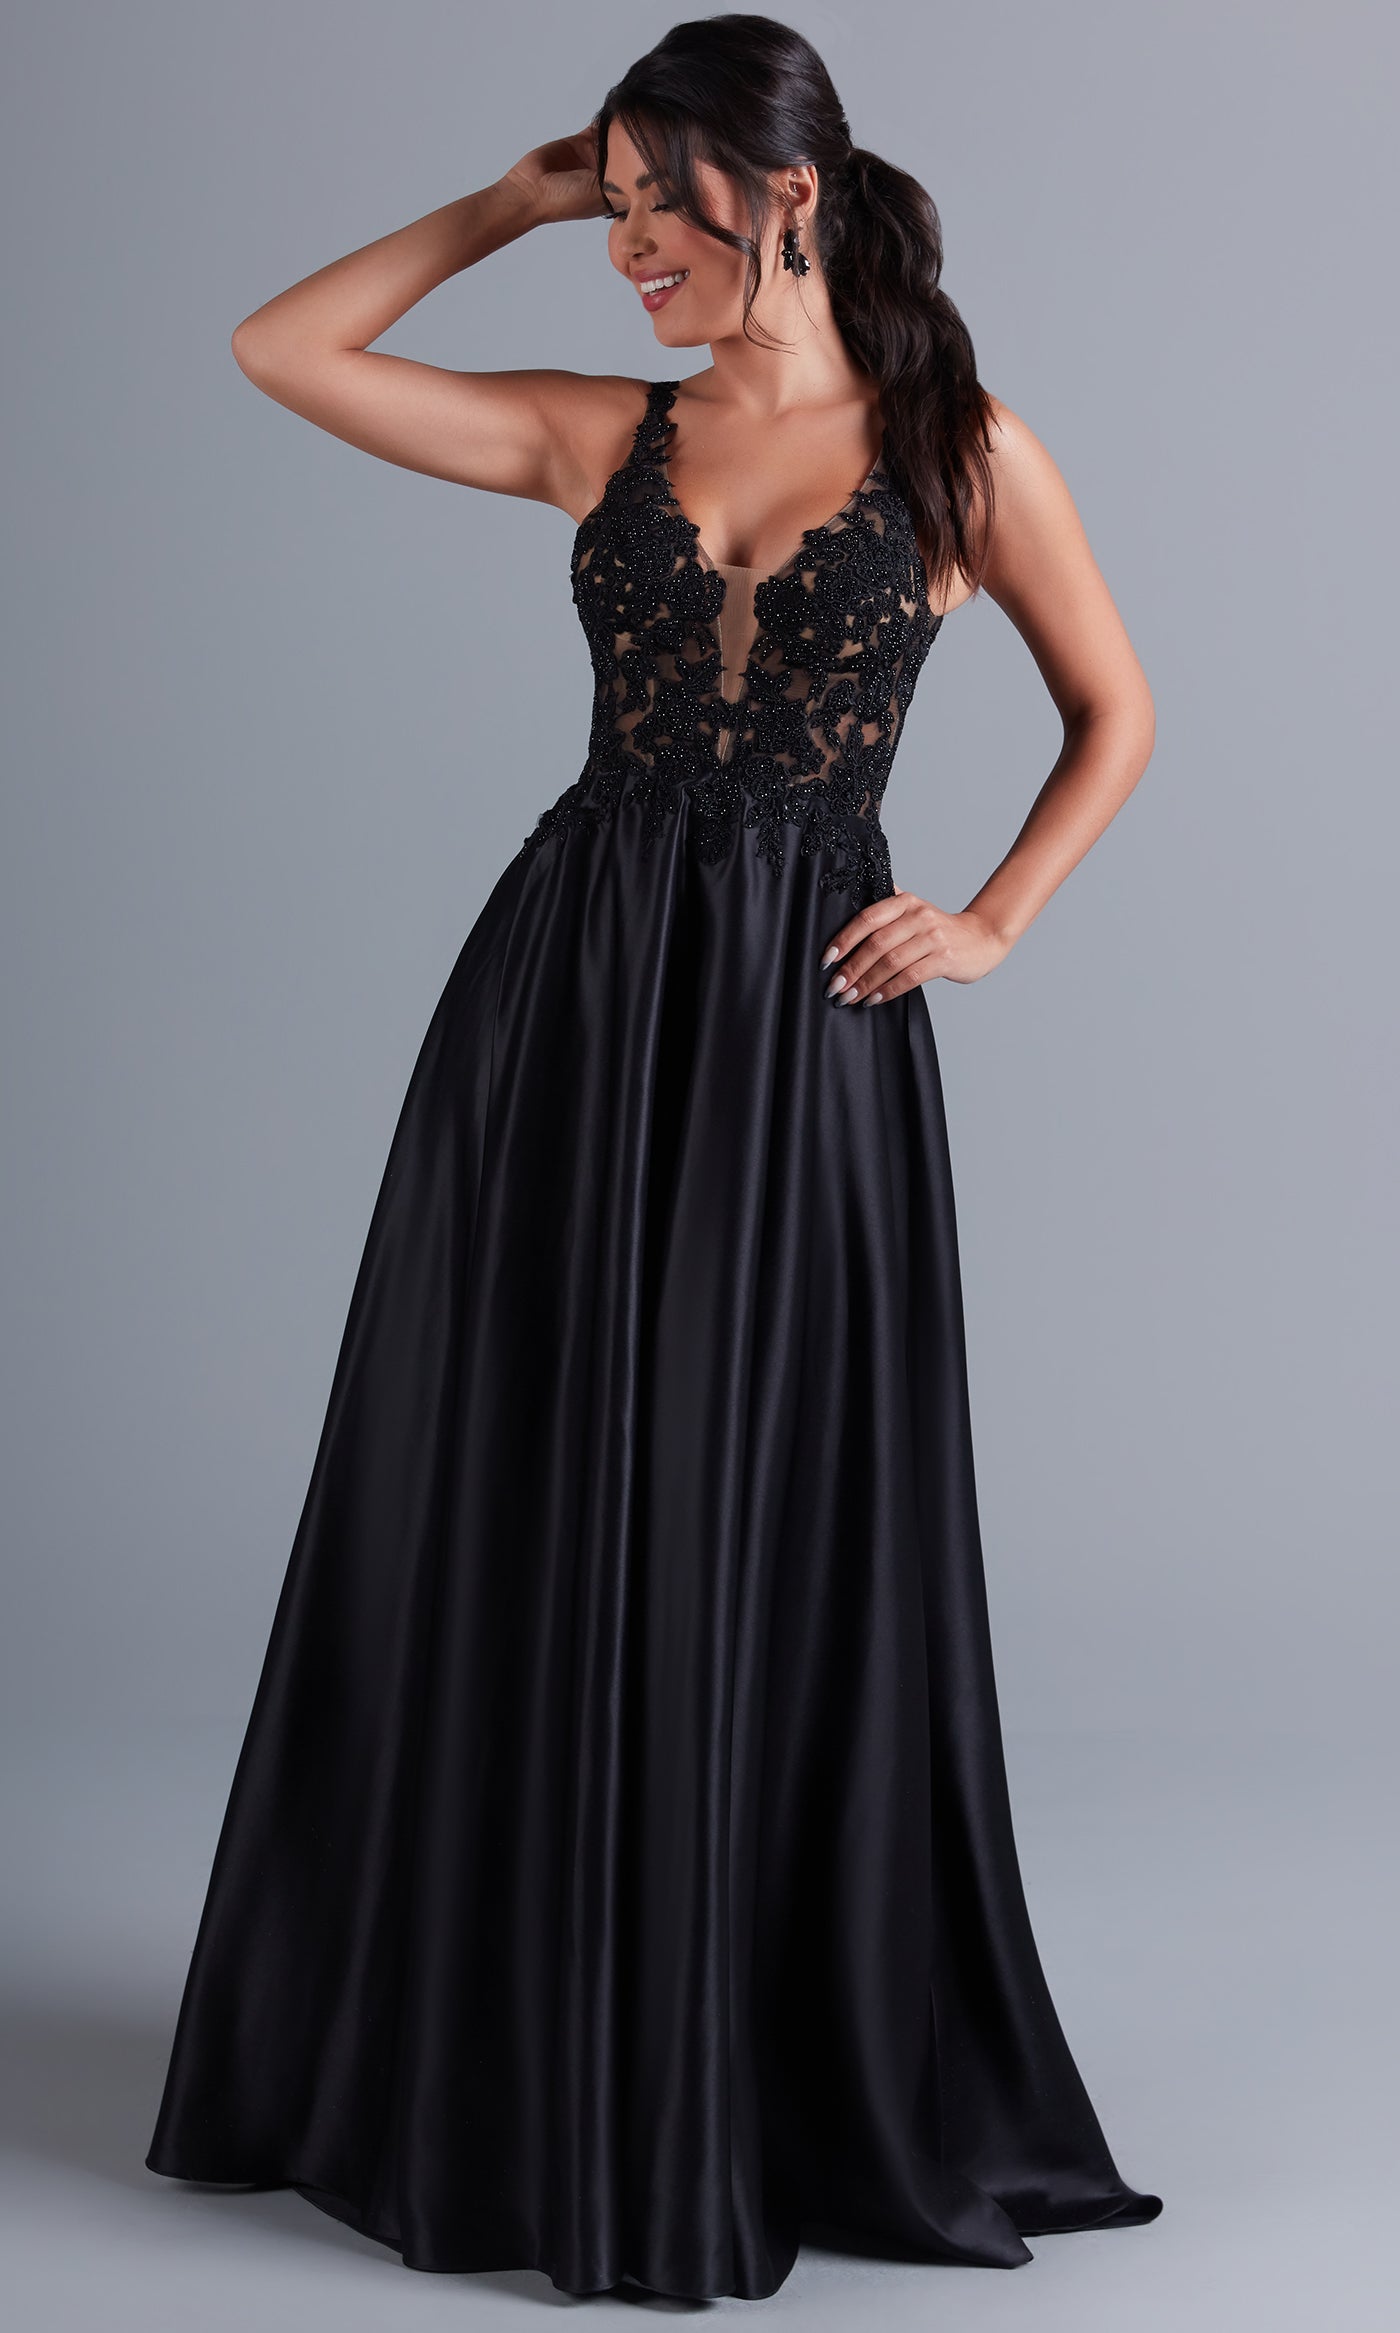 Elegance of a Black Formal Dress